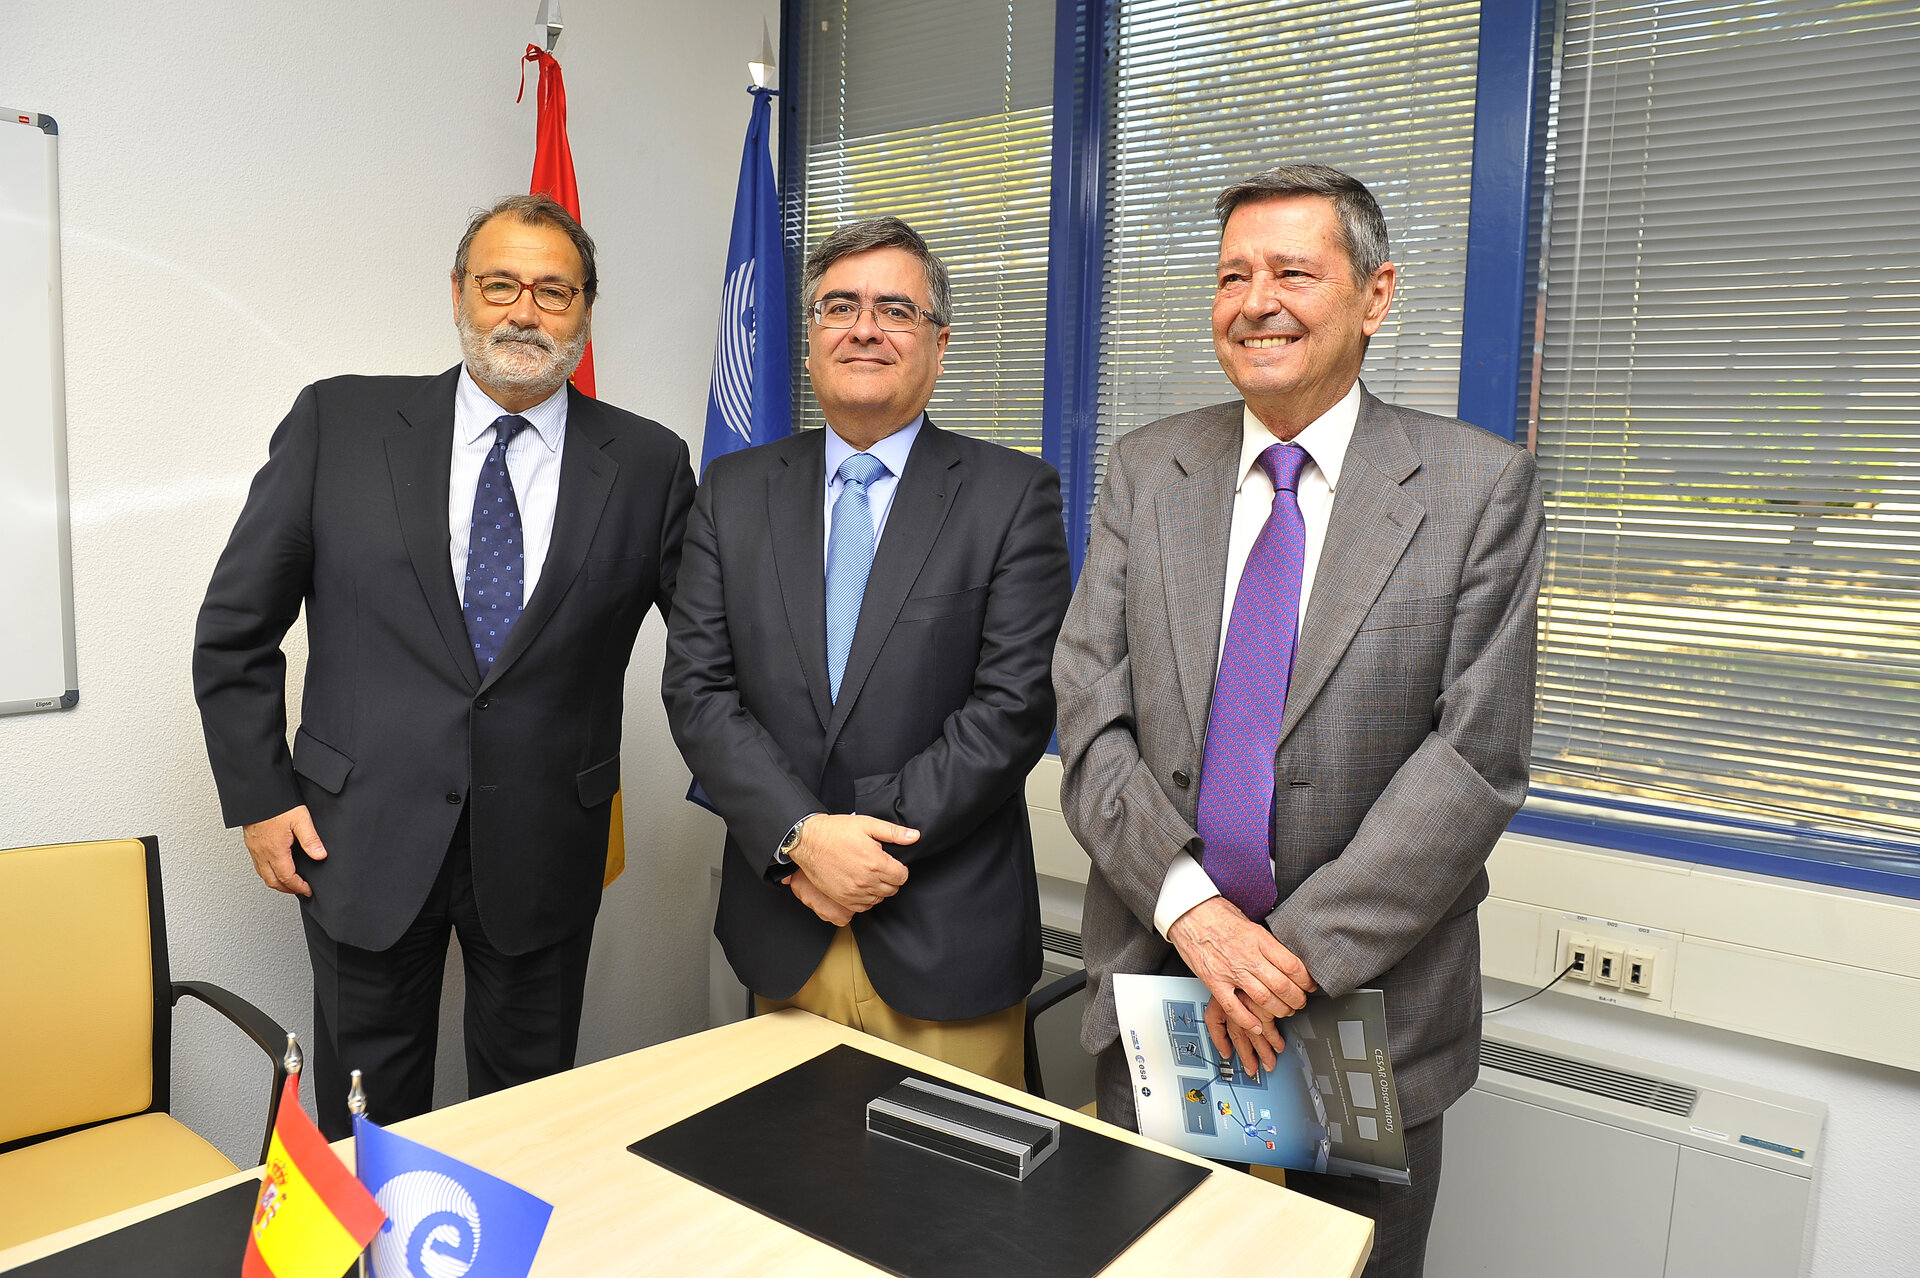 Los tres representantes de ESA, INTA e INSA tras la firma del acuerdo